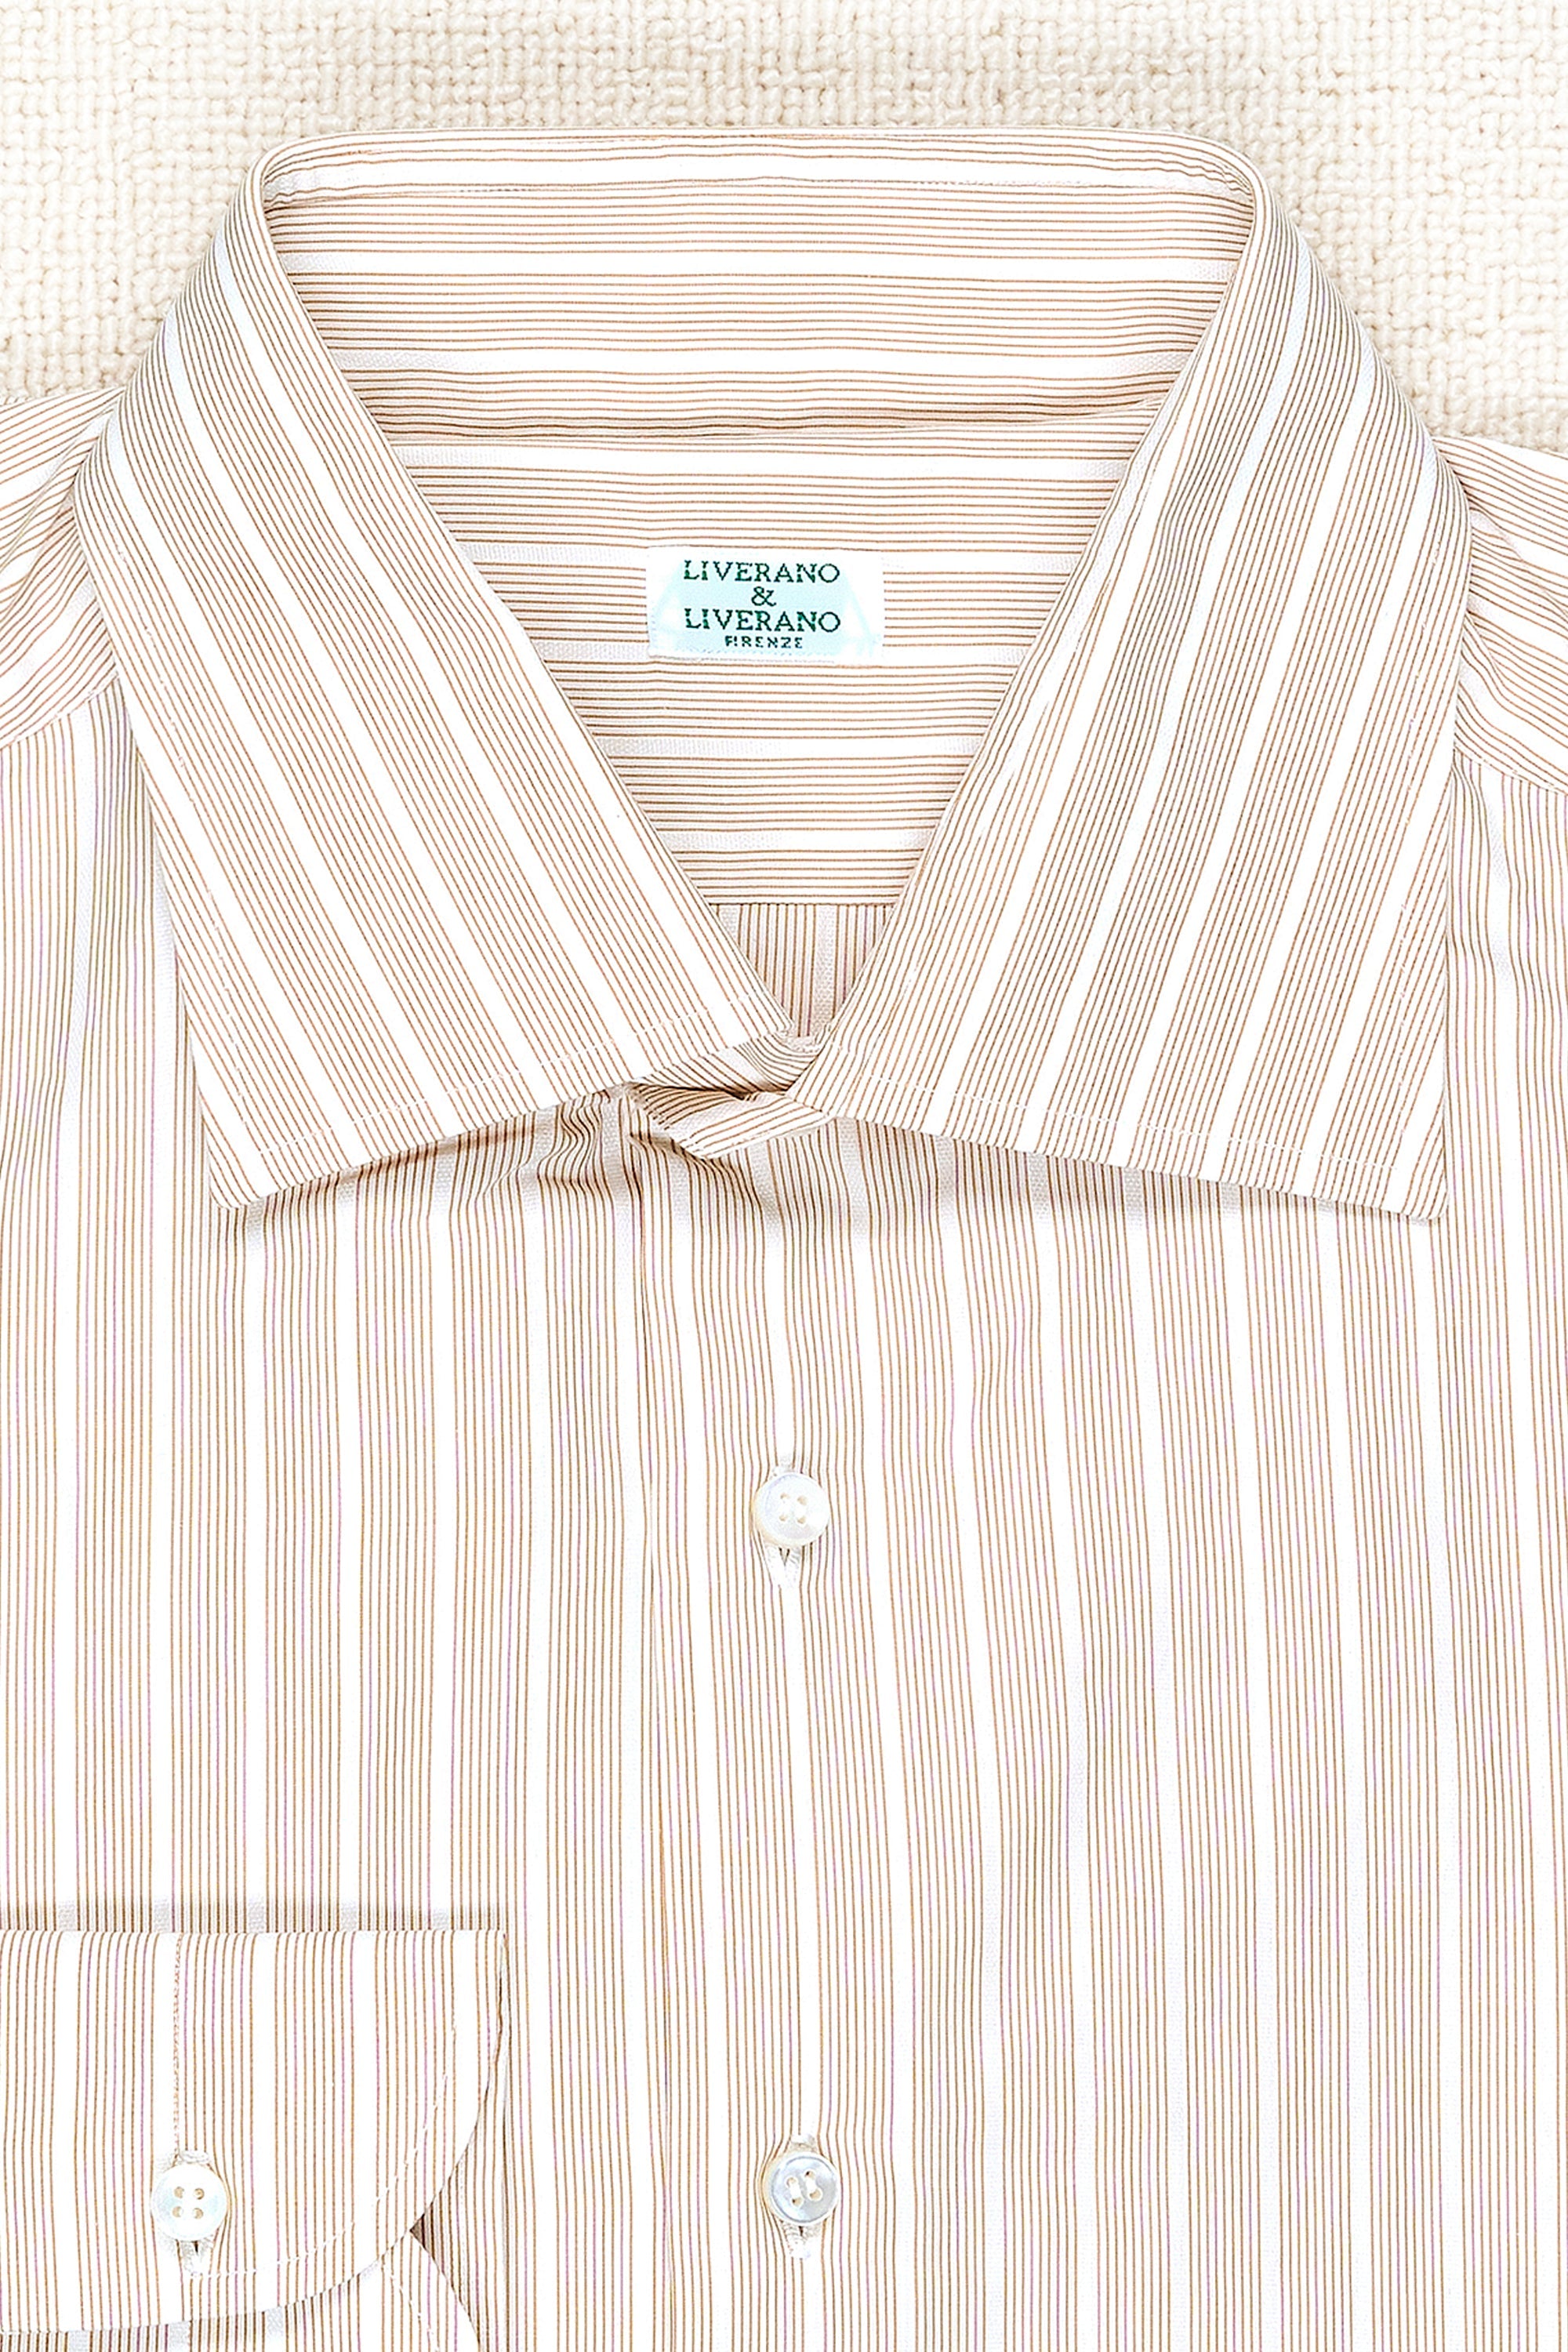 Liverano & Liverano Brown/White Stripe Cotton Spread Collar Shirt